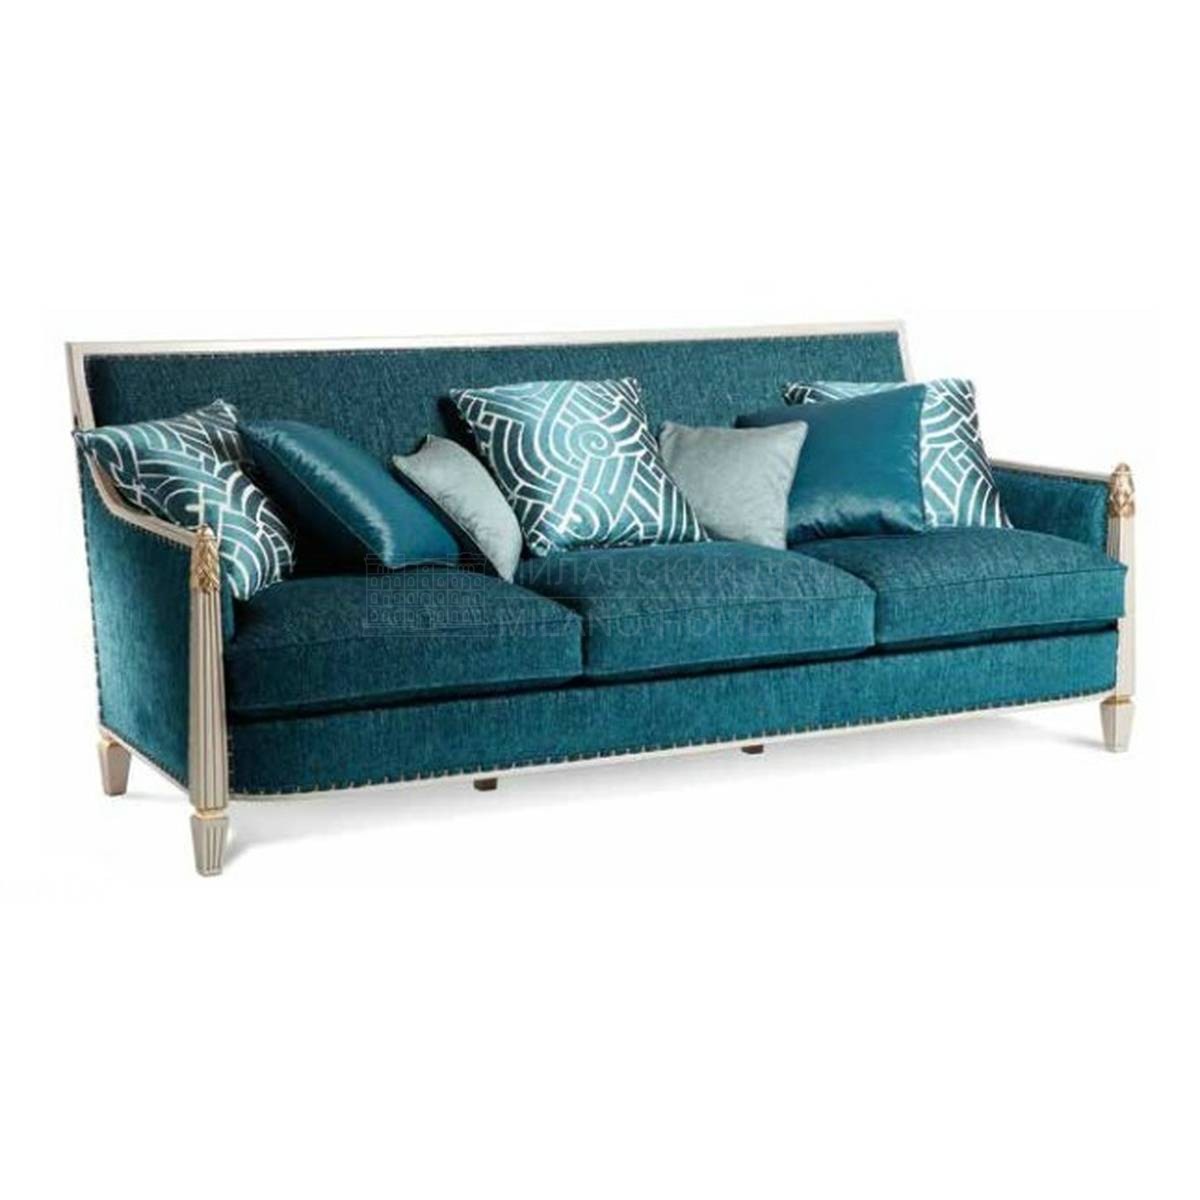 Прямой диван art.8664 sofa из Италии фабрики SALDA